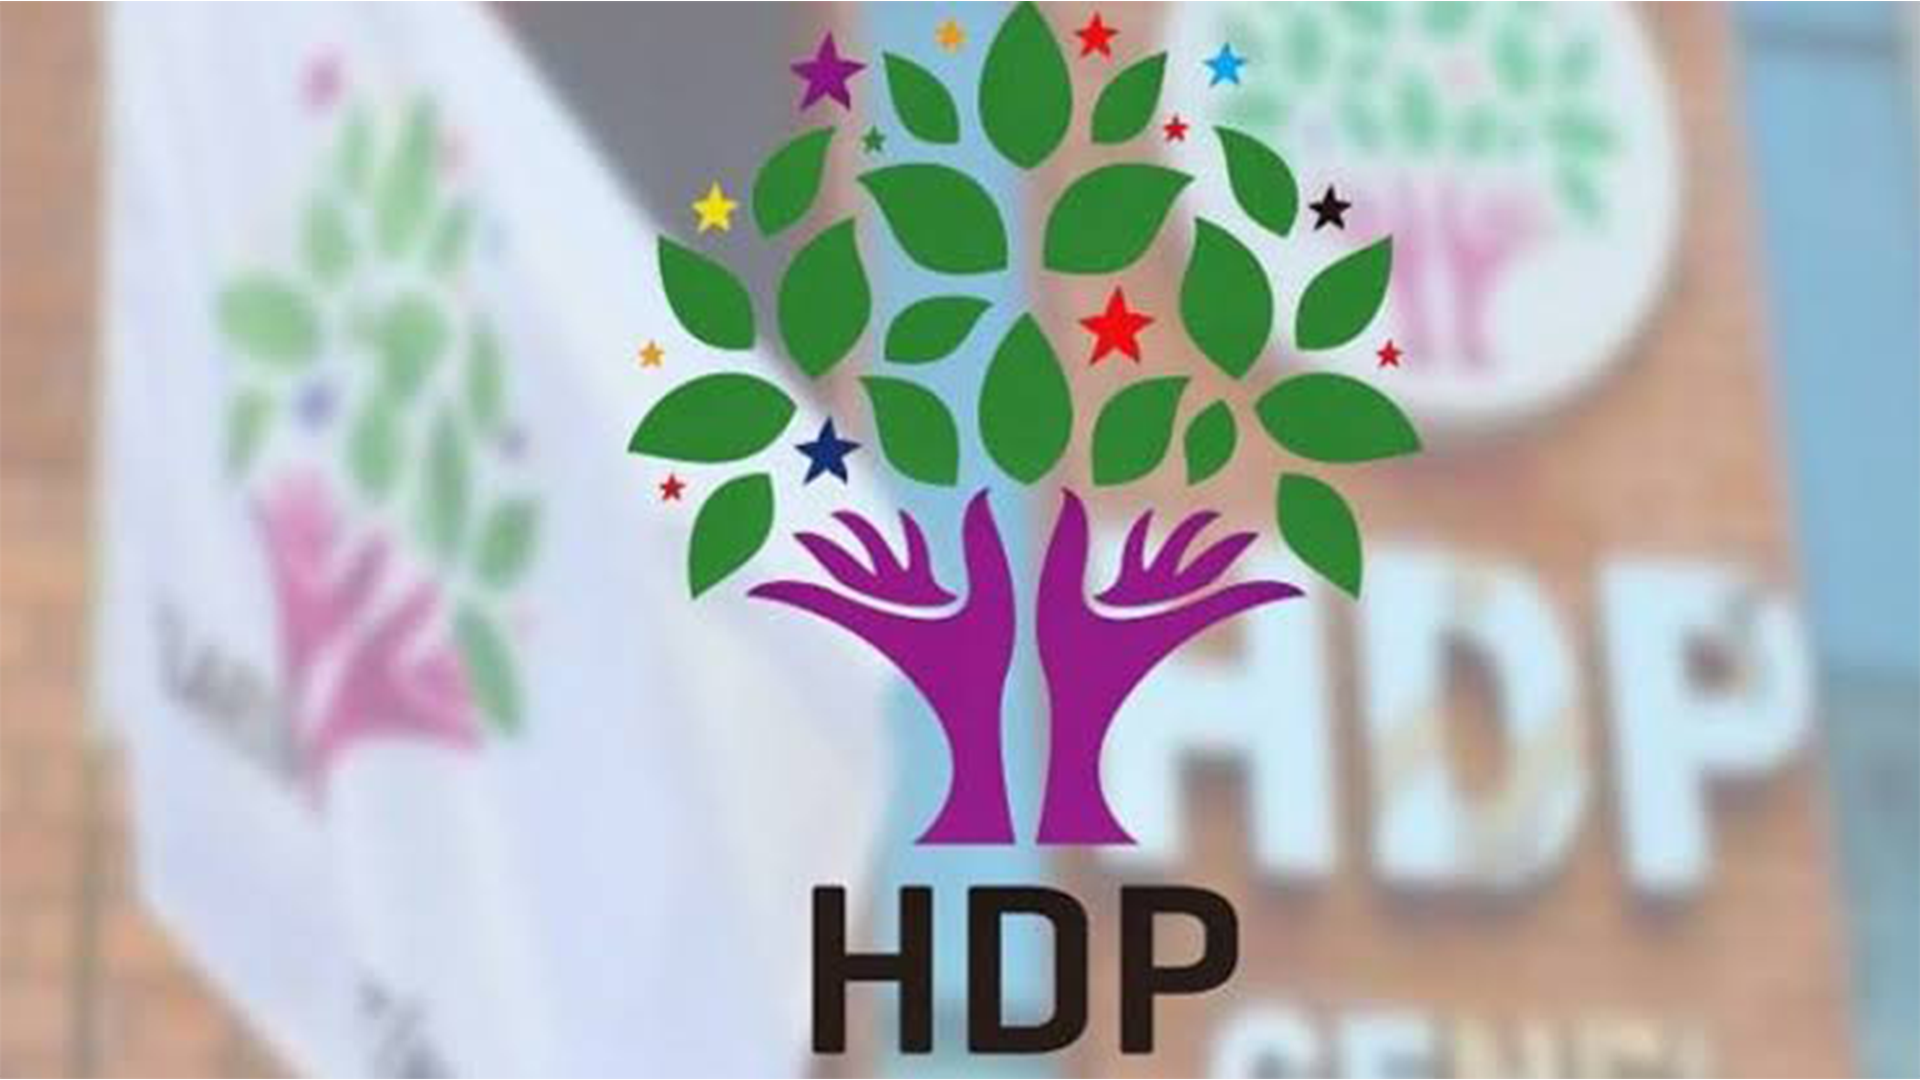 HDP önderliğinde üçüncü ittifak geliyor! Bildirgede resmen duyurdular